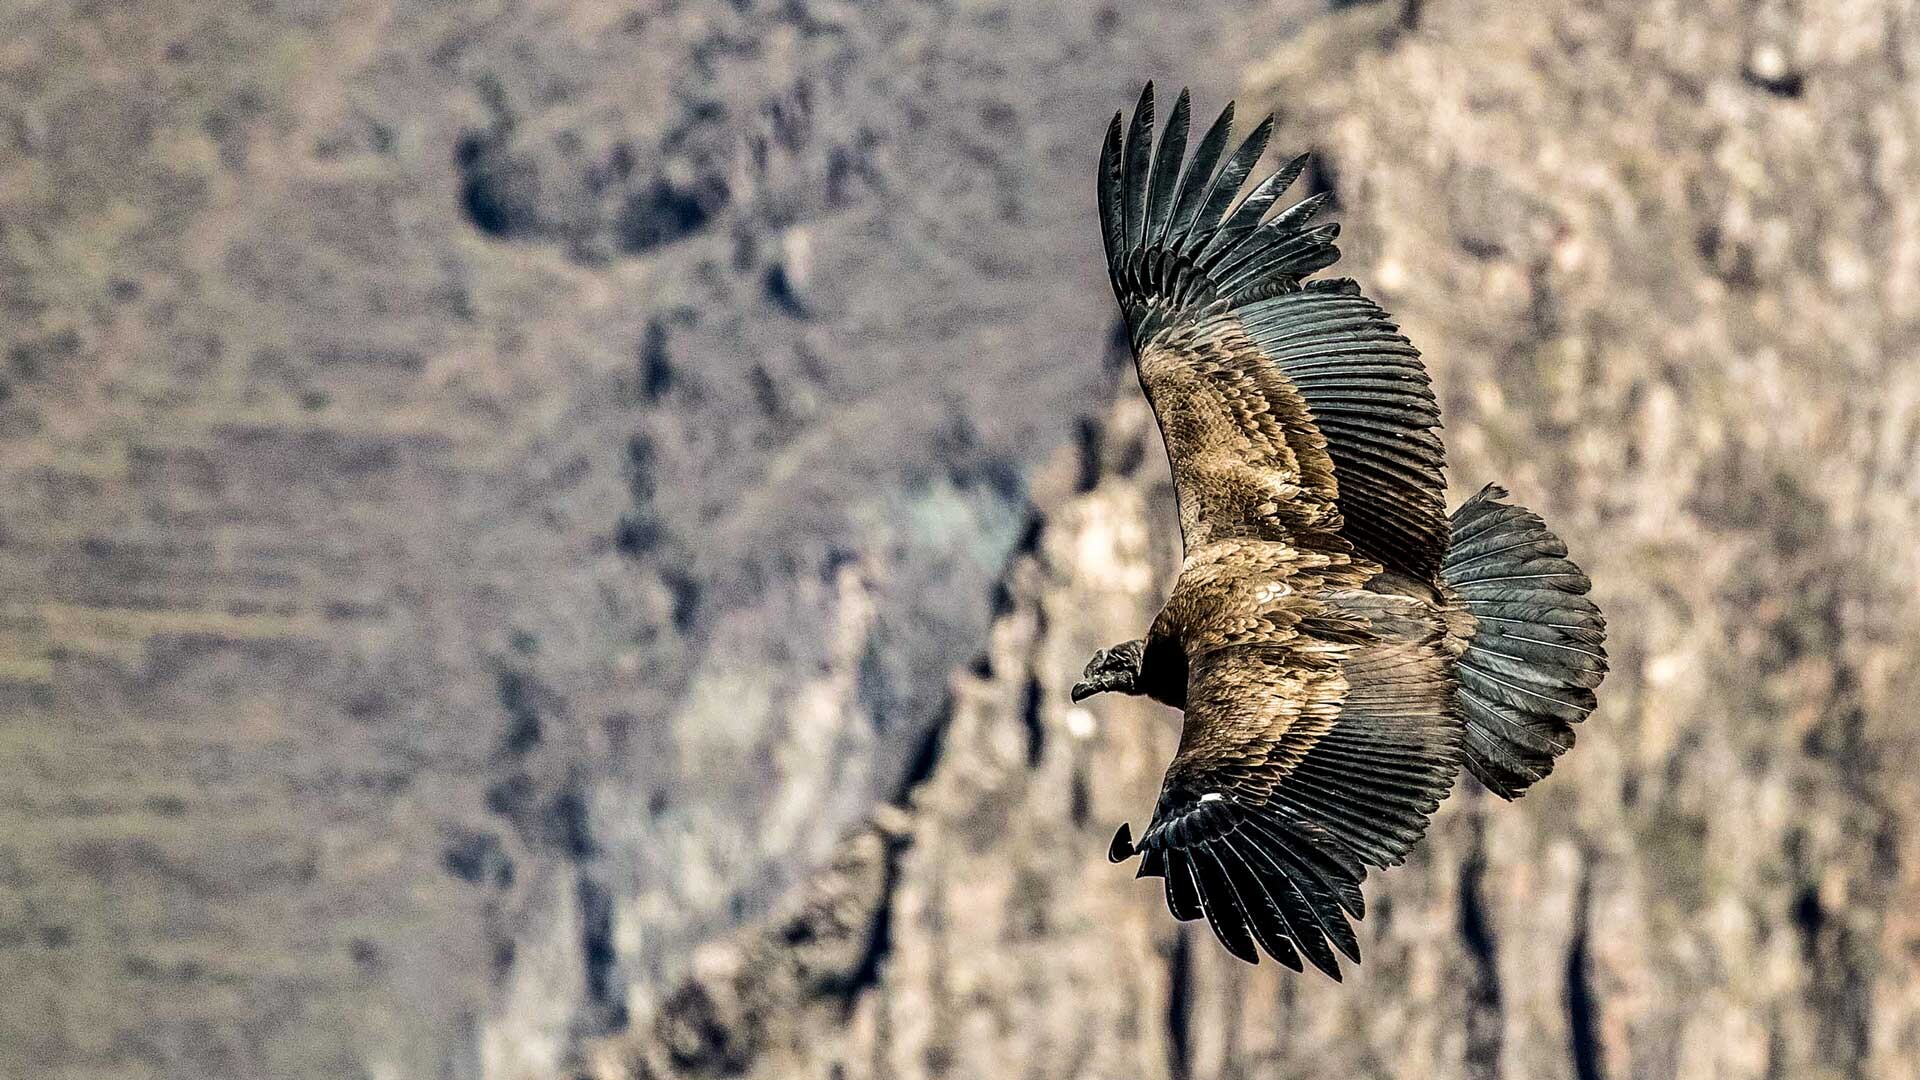 FARBIGER GEHT'S KAUM NOCH - Peru 2016 - Teil 2: Der Flug des Condor